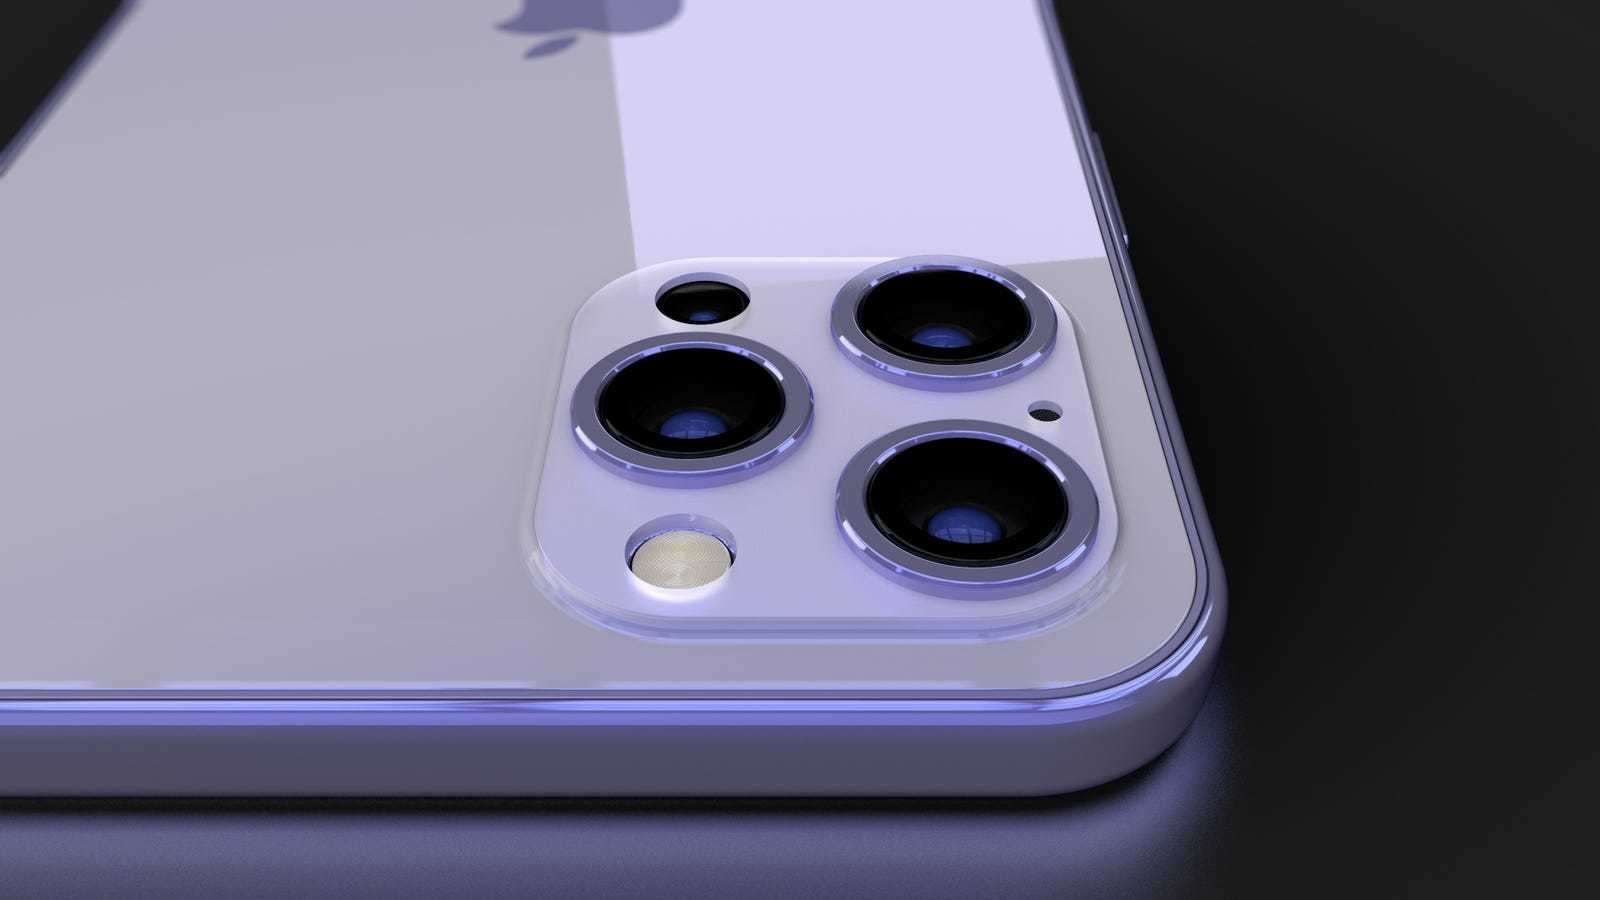 Rộ tin iPhone 12 được trang bị camera 3D “World Facing” mới